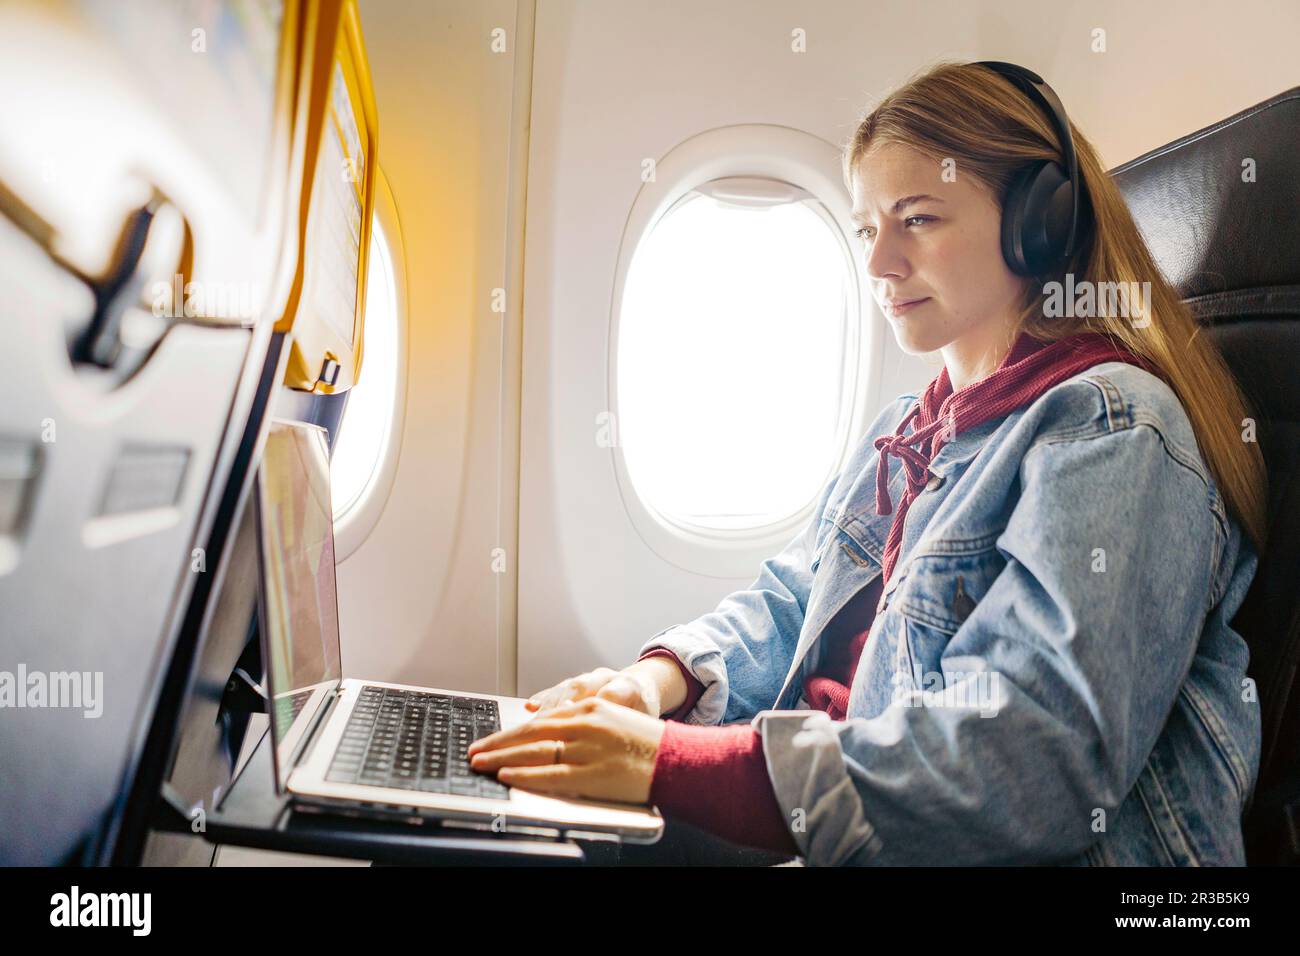 Eine junge Frau, die im Flugzeug Musik hört und ein Notebook benutzt Stockfoto